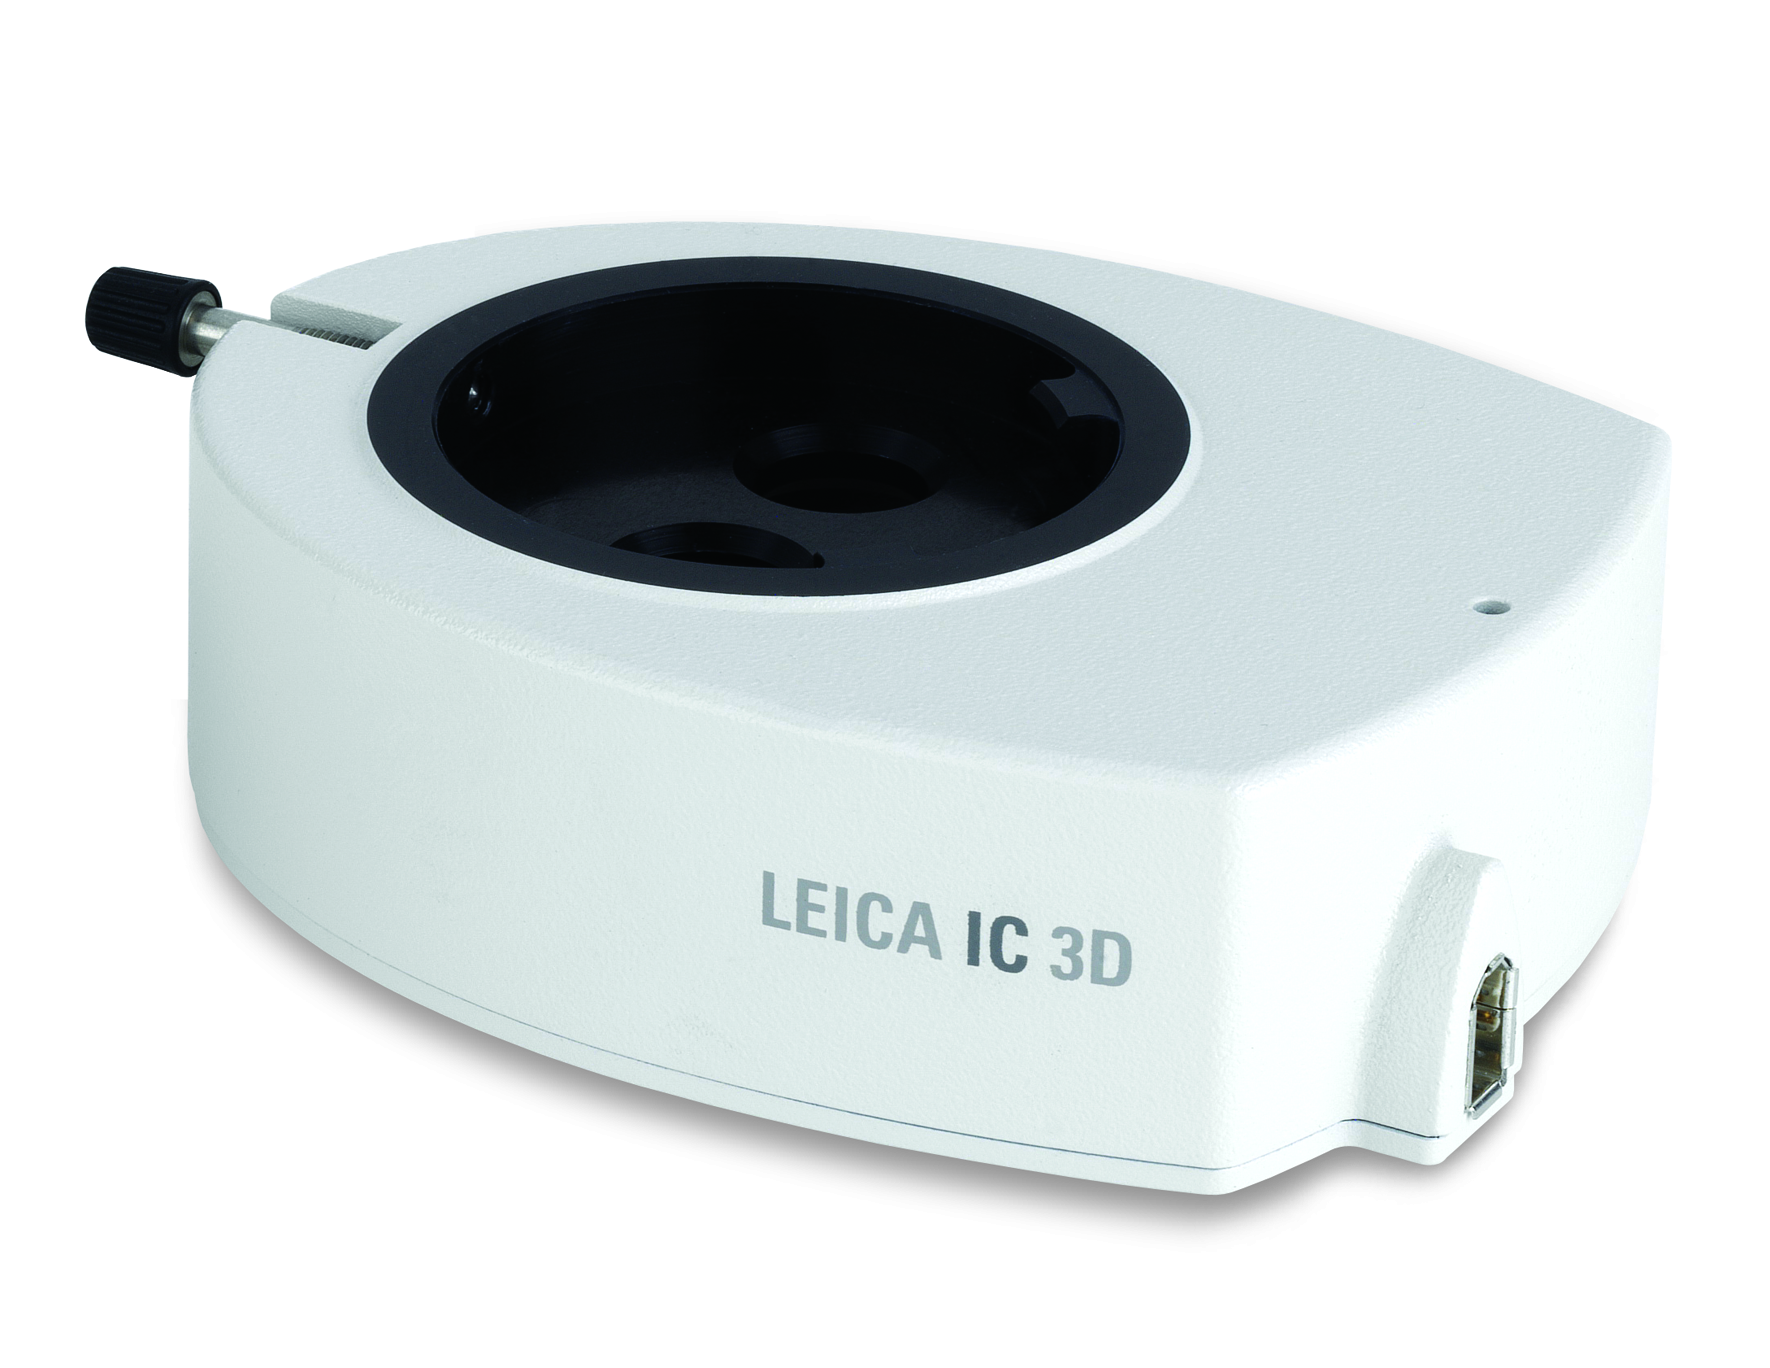 彩色数码摄像机为体视镜  Leica IC 3D